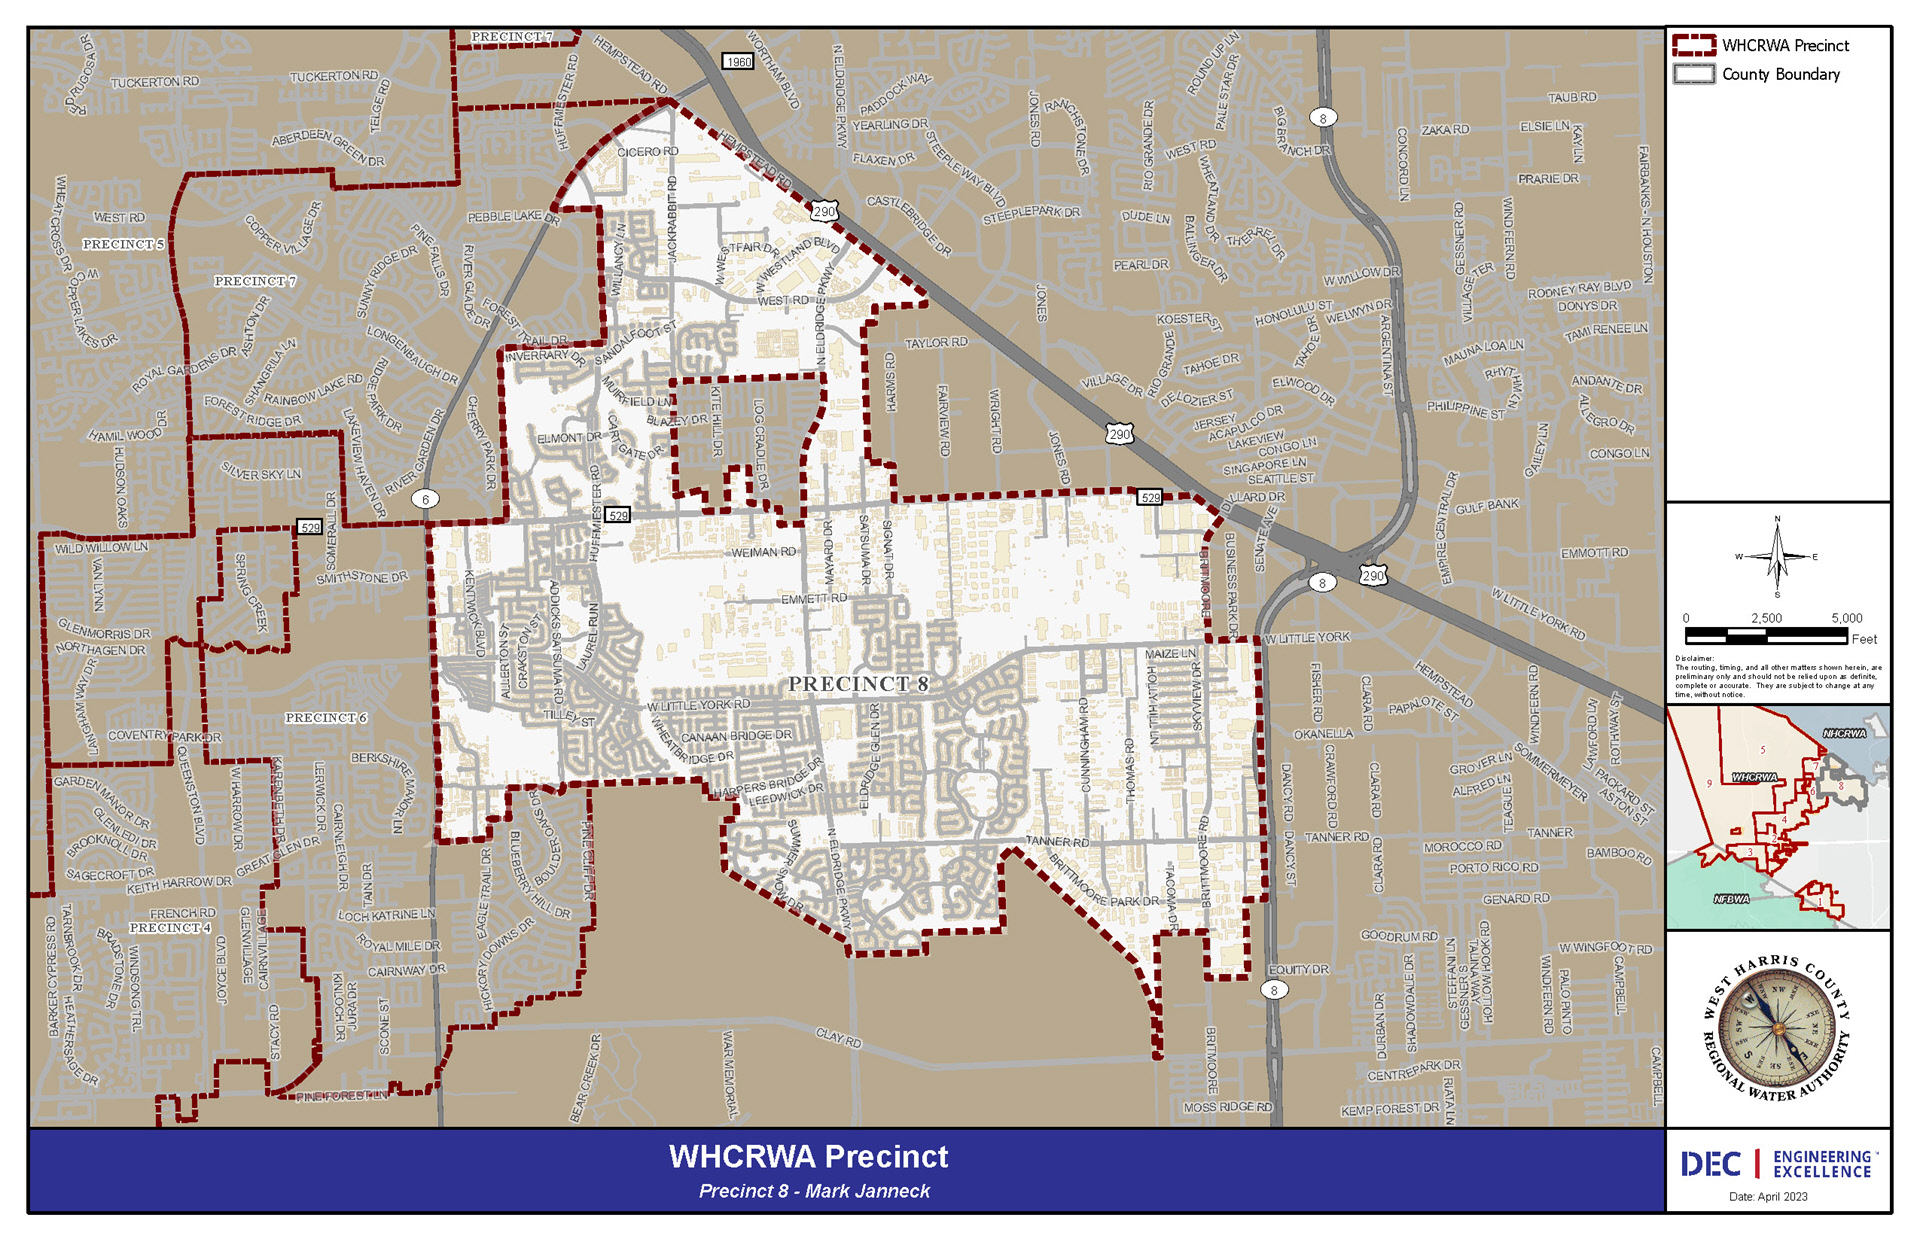 WHCRWA Precinct 8 Map